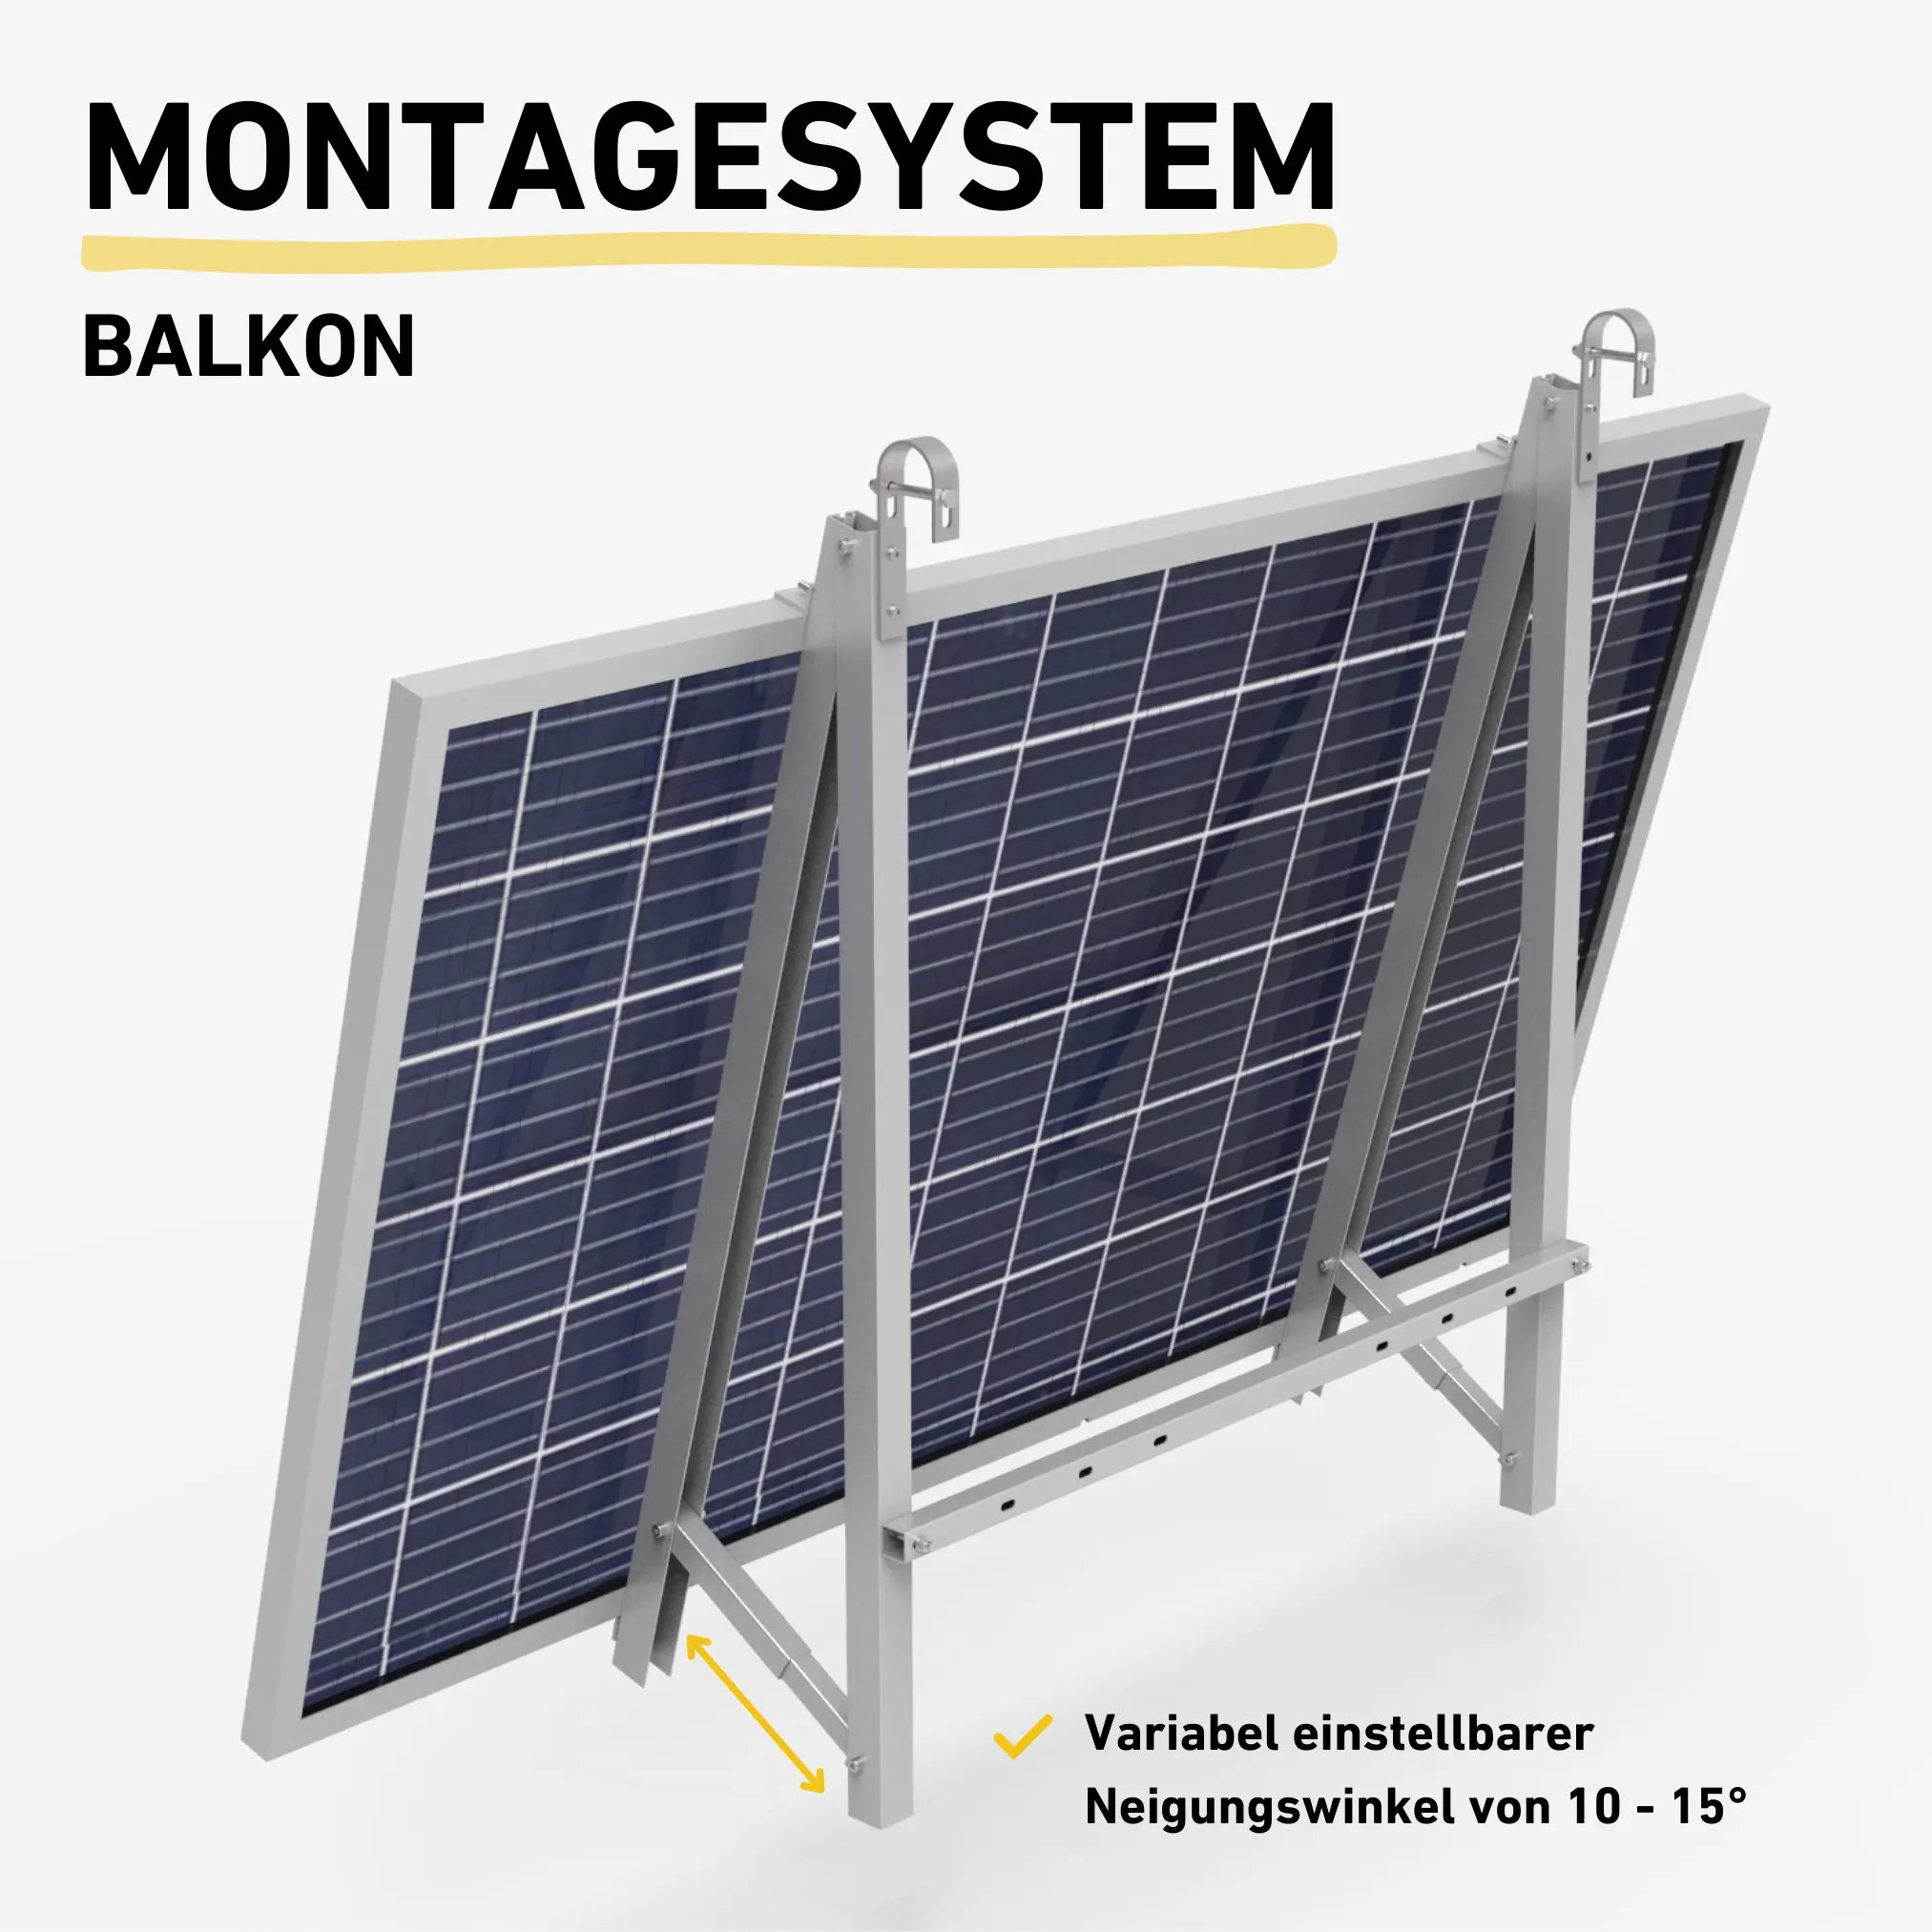 Balkonkraftwerk Montagesystem Balkon Produktbild Darstellung